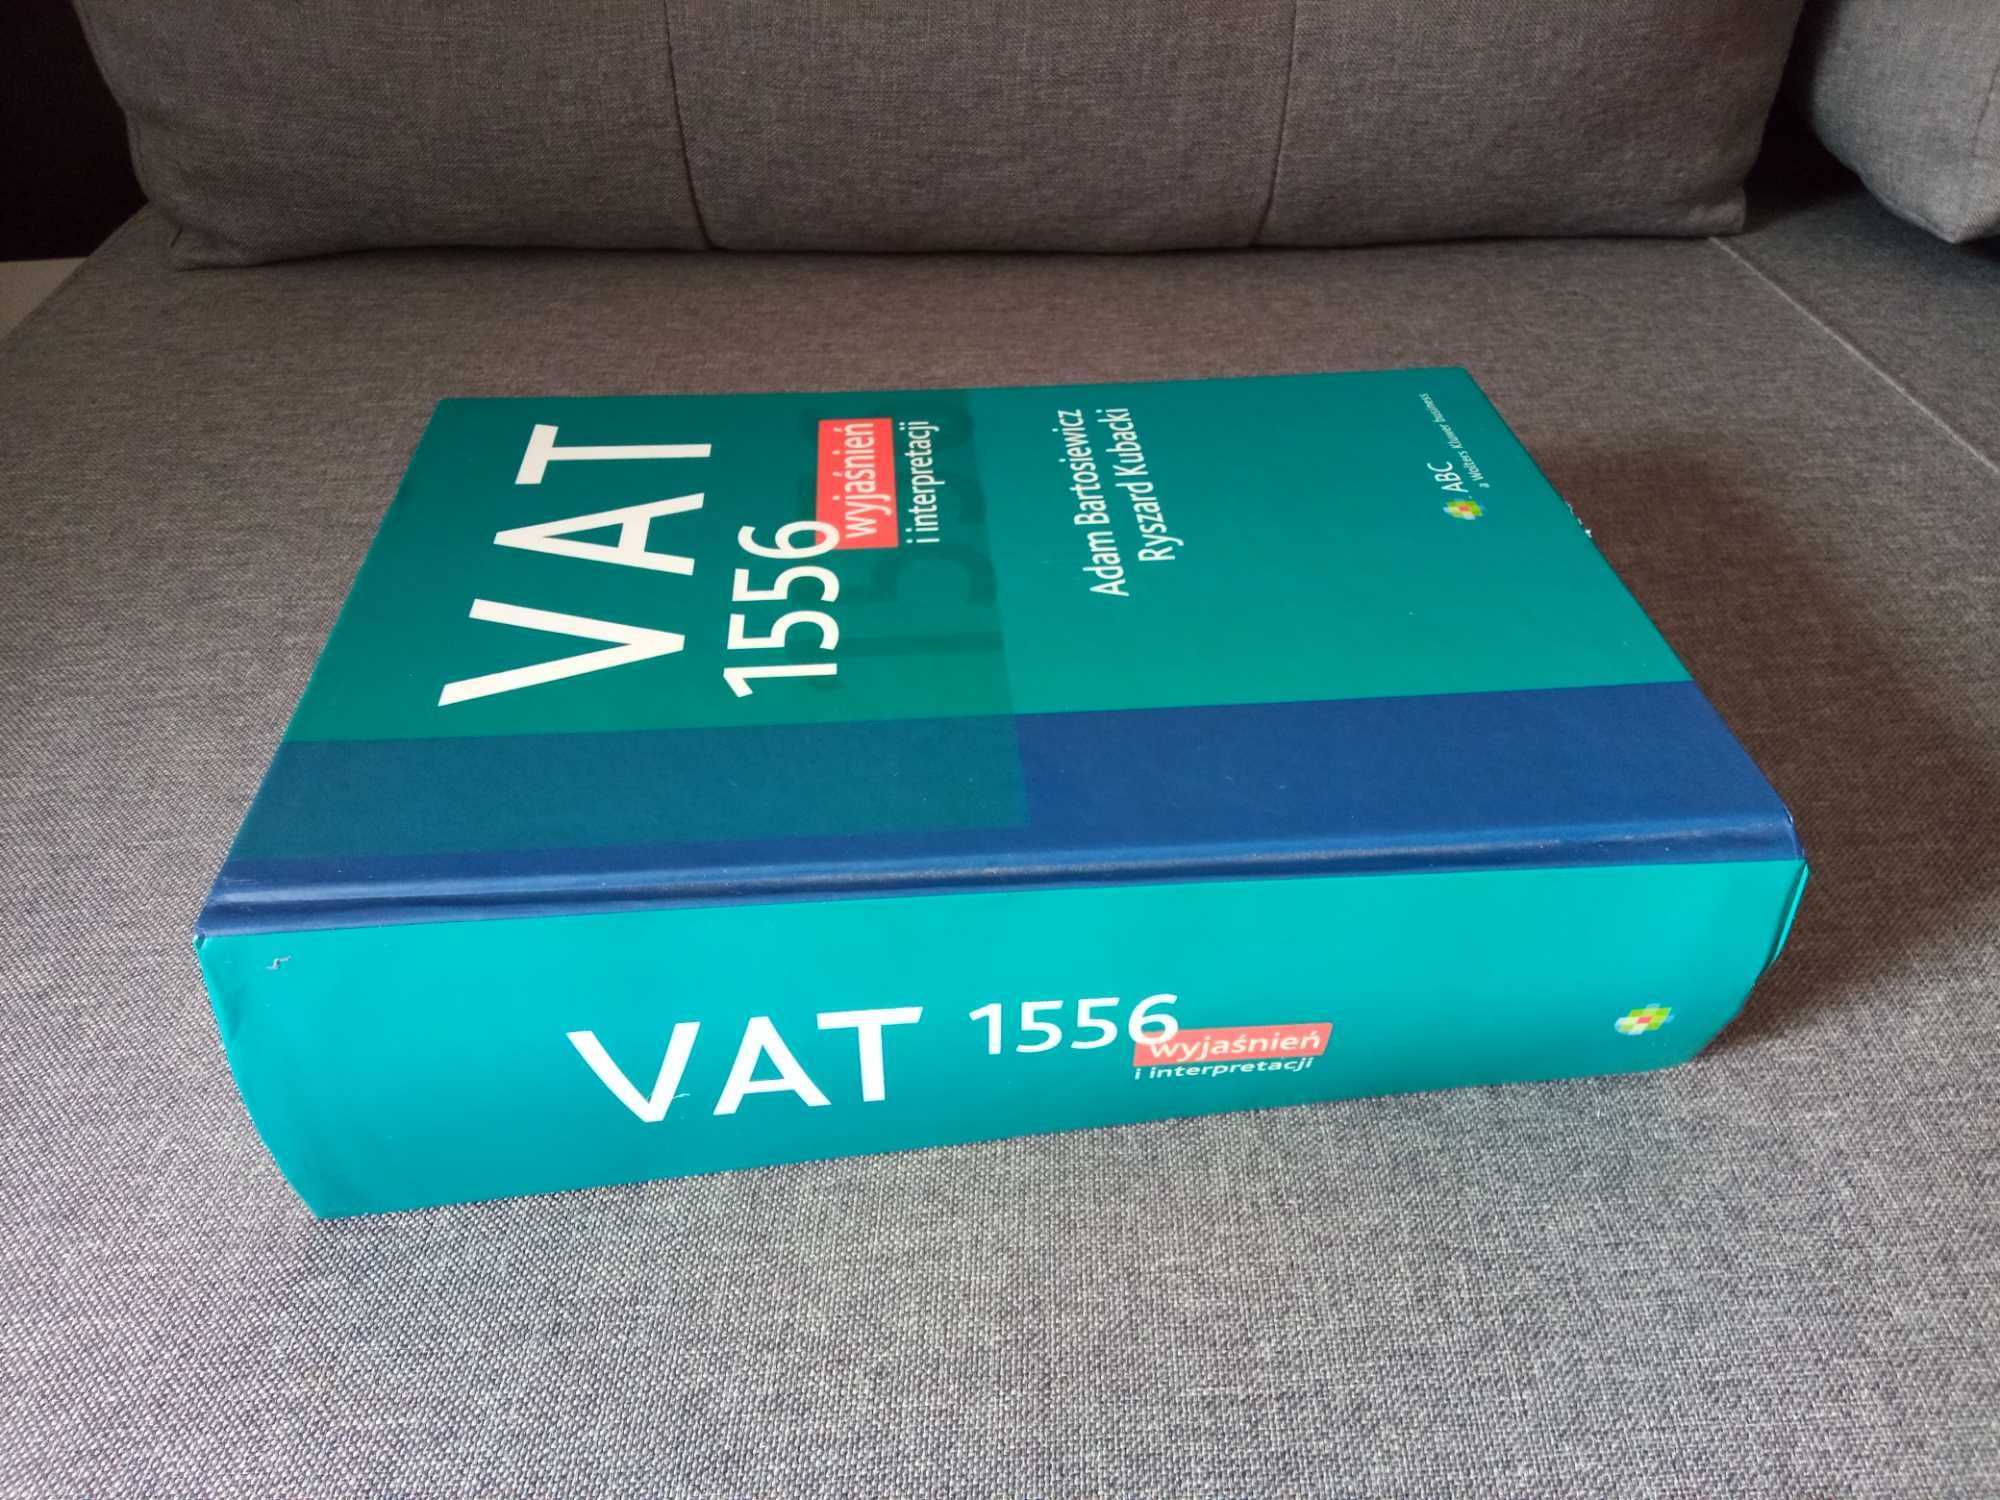 VAT 1556 wyjaśnień i interpretacji